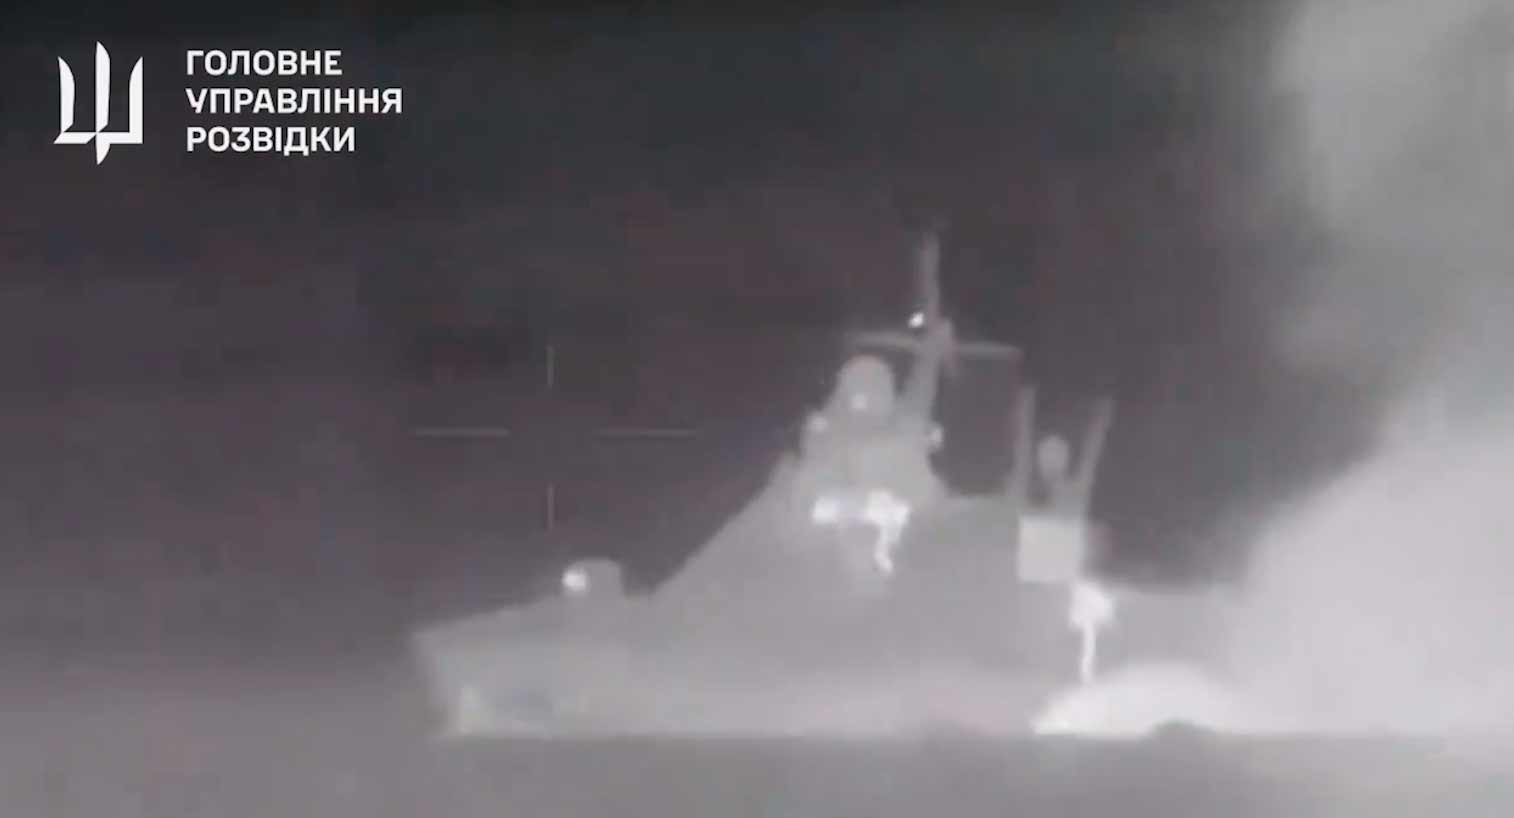 Ny video viser eksplosionen, der sænkede det russiske skib Sergey Kotov. Gengivelse Twitter @wartranslated